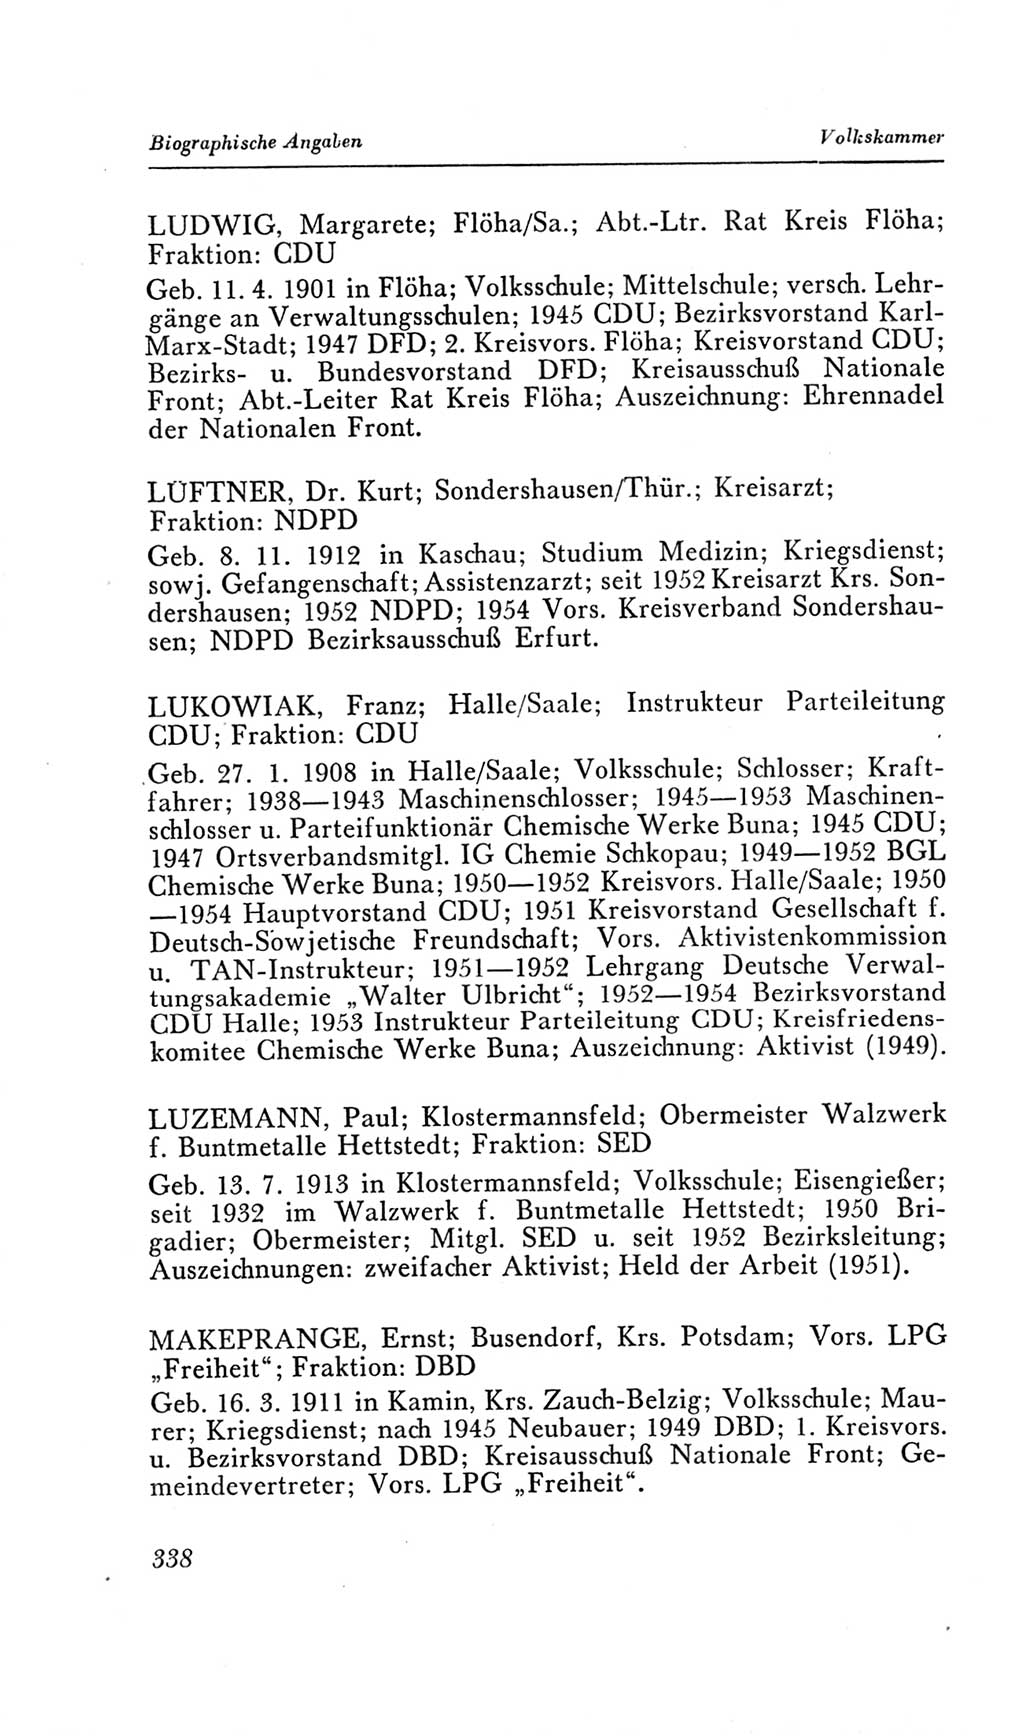 Handbuch der Volkskammer (VK) der Deutschen Demokratischen Republik (DDR), 2. Wahlperiode 1954-1958, Seite 338 (Hdb. VK. DDR, 2. WP. 1954-1958, S. 338)